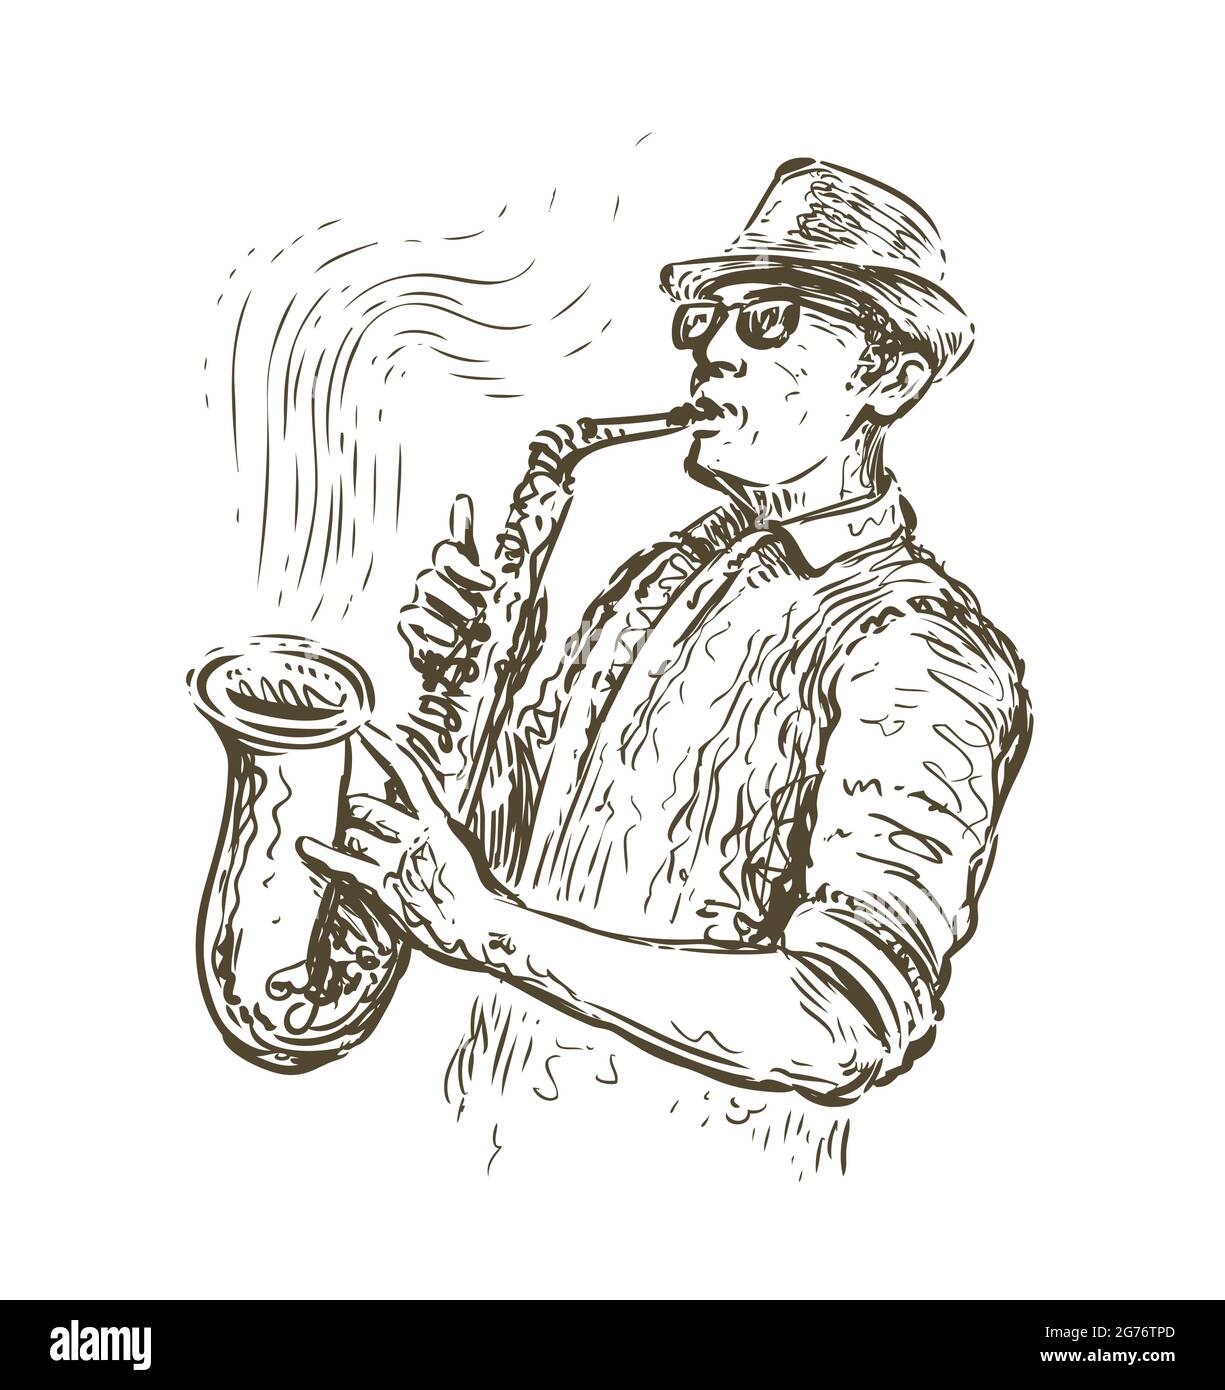 Dessin du saxophone jazz. Concept de musique dans un style vintage Illustration de Vecteur